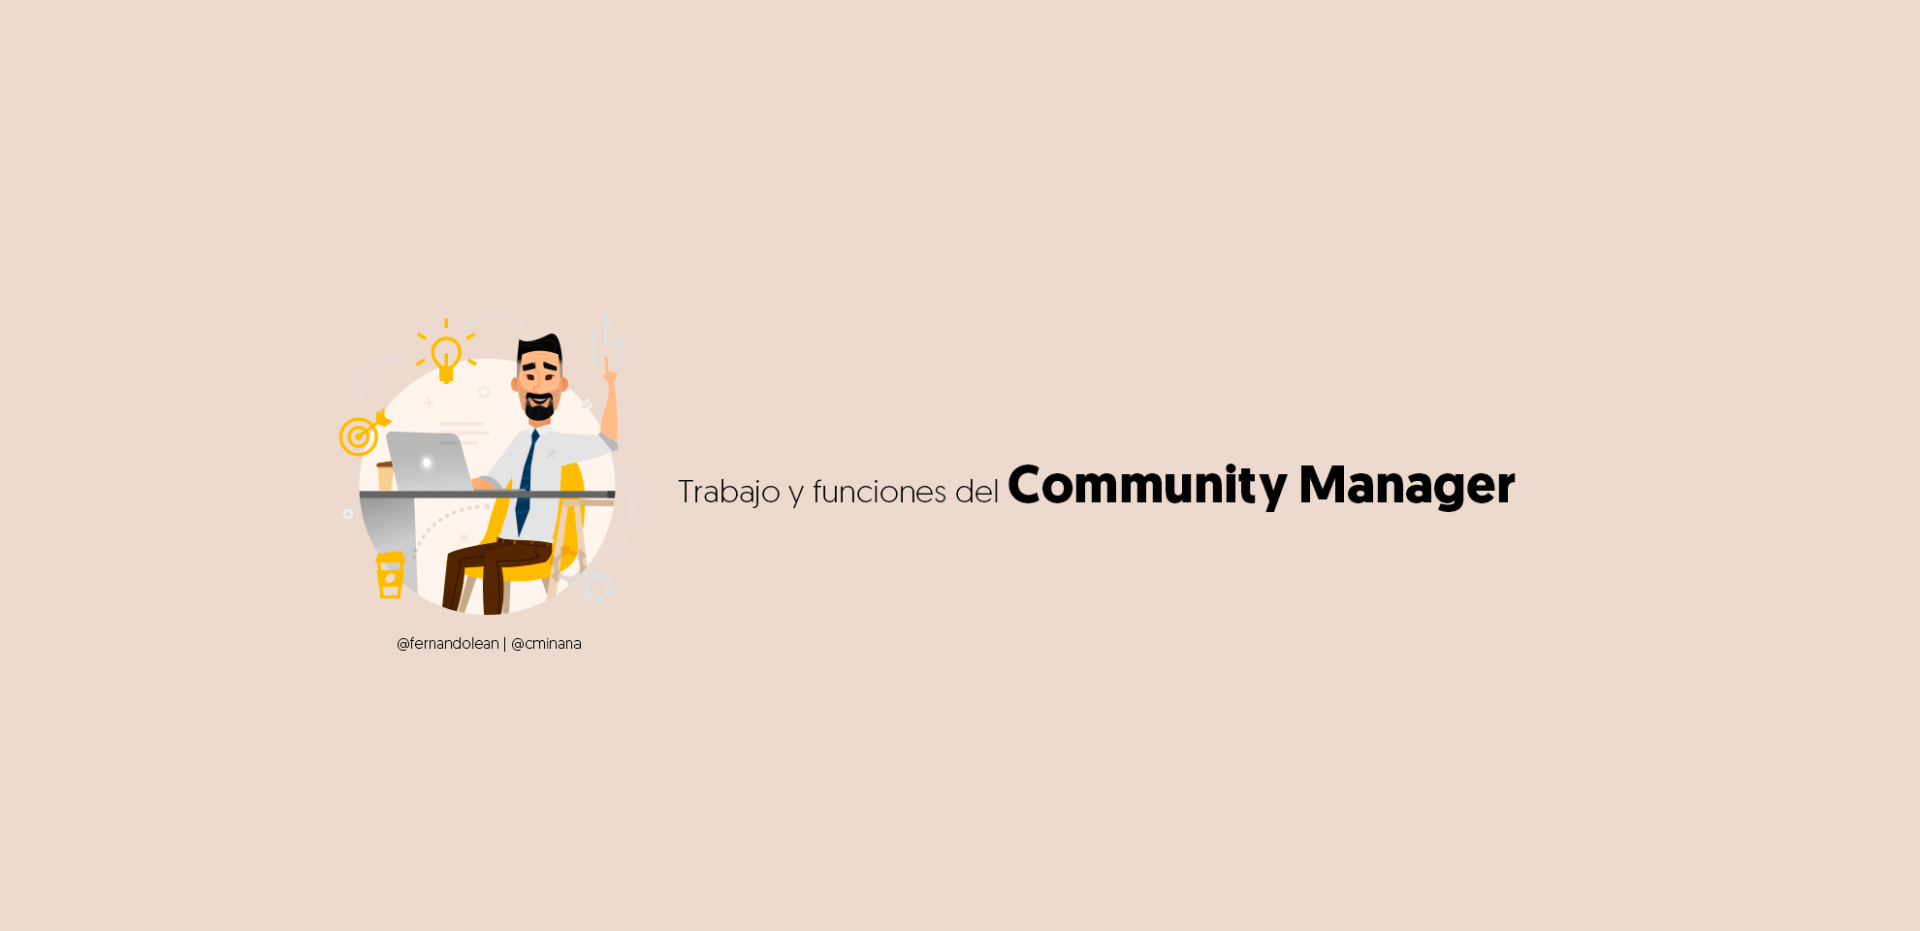 Trabajo y funciones del Community Manager